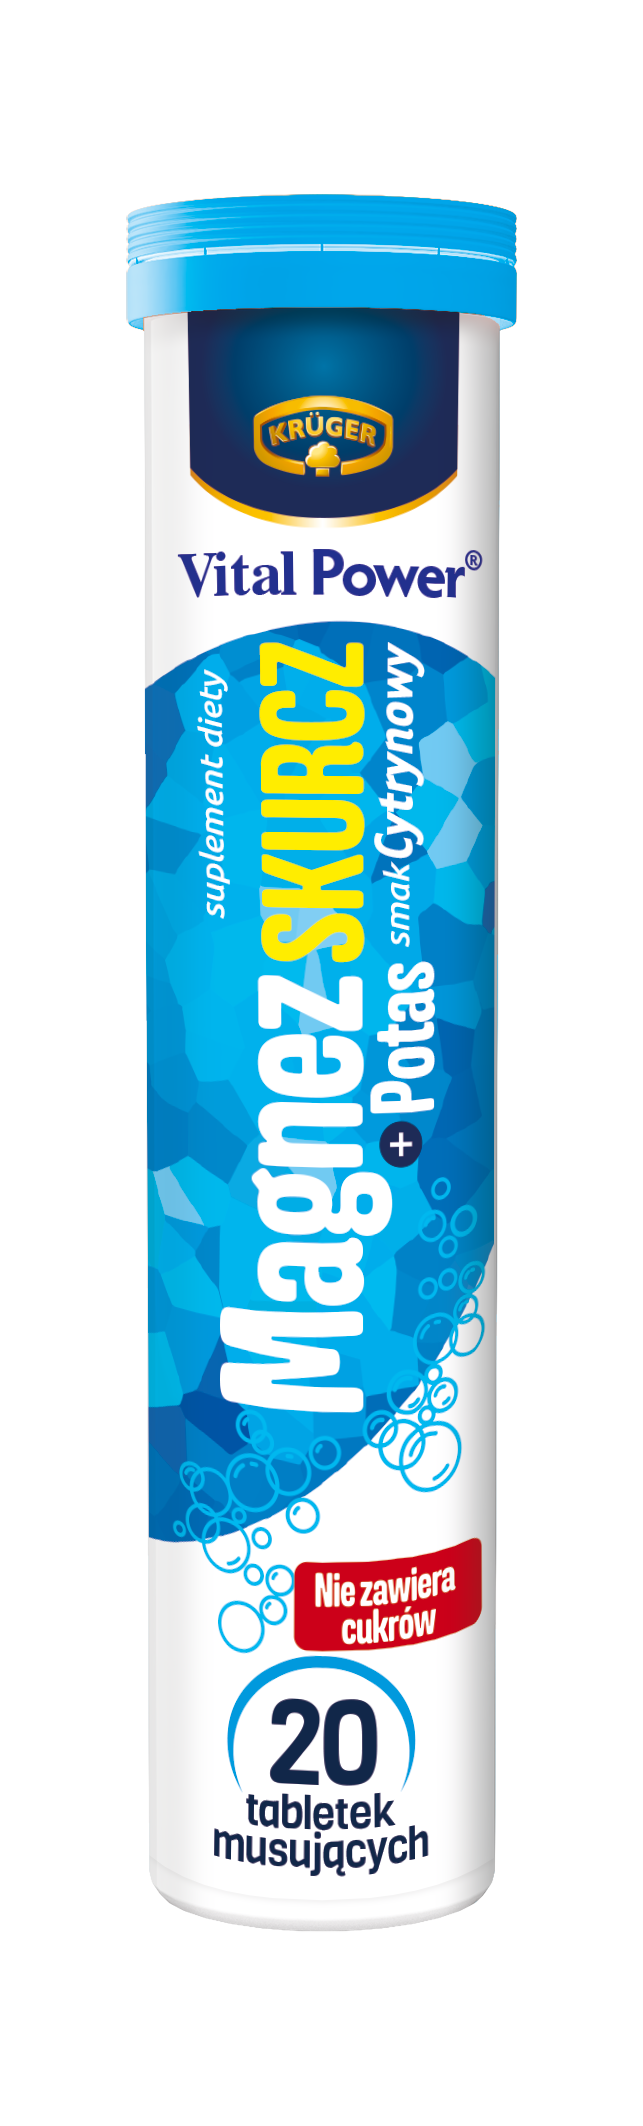 Vital Power Magnez Skurcz + potas Tabletki musujące o smaku cytrynowym